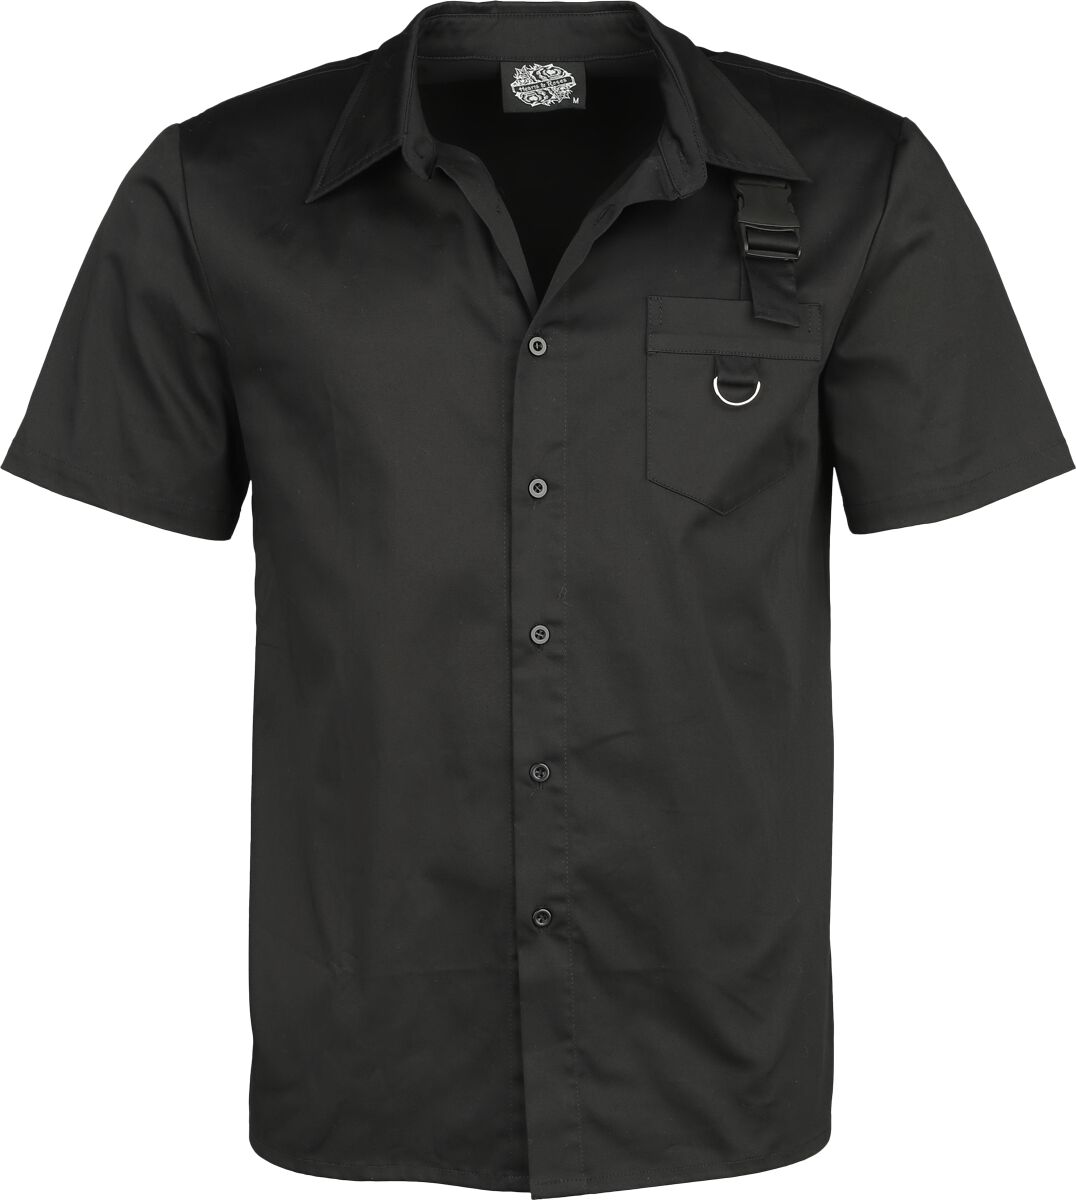 H&R London - Gothic Kurzarmhemd - Black Shirt - S bis 4XL - für Männer - Größe M - schwarz